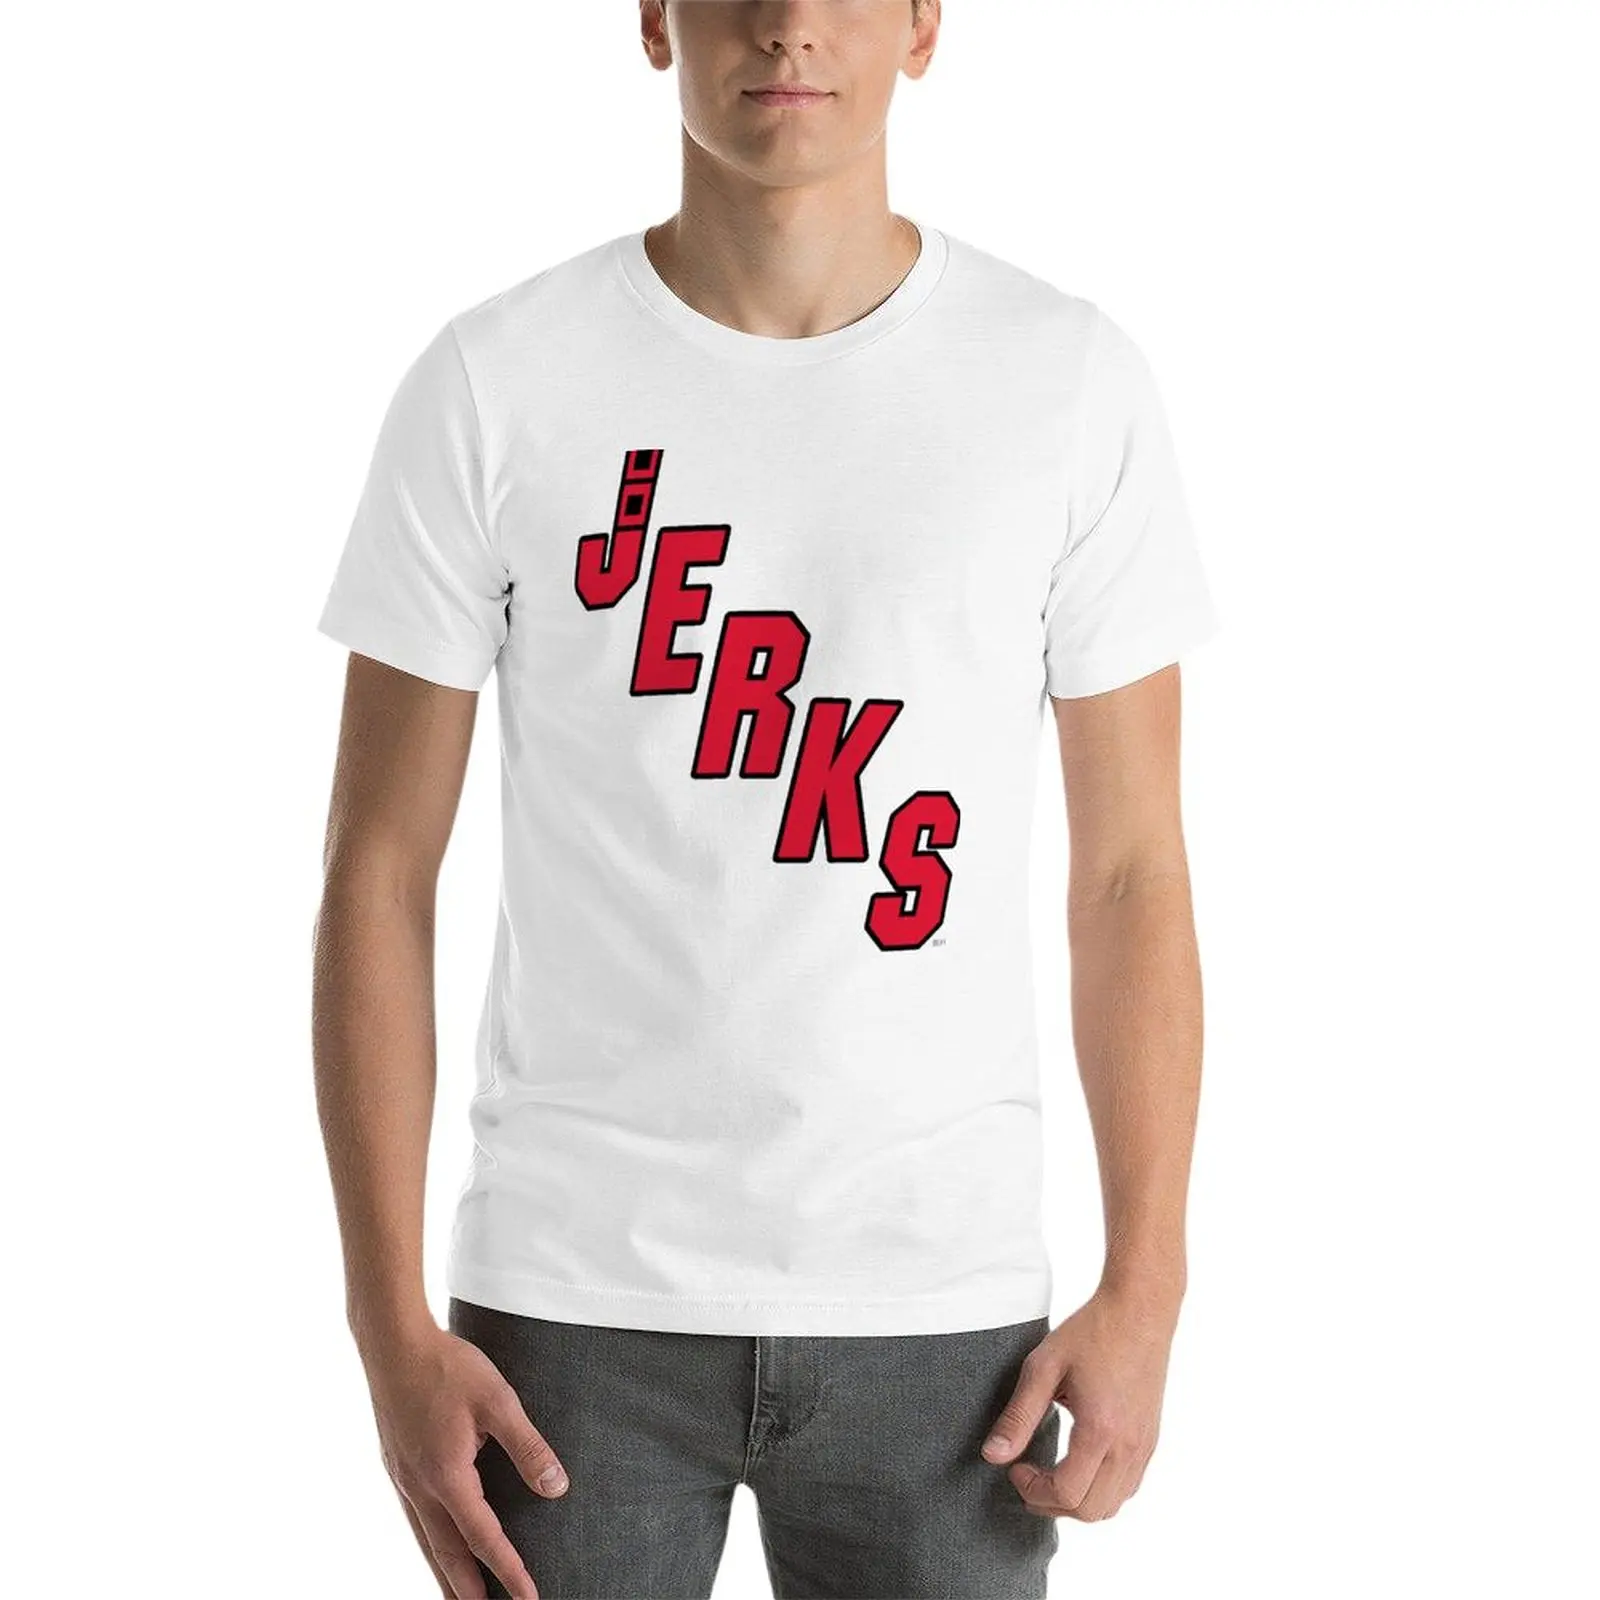 New Bunch of Jerks (Carolina Hurricanes) - Футболки с героями Пивной лиги, футболки для спортивных болельщиков, мужские белые футболки Изображение 2